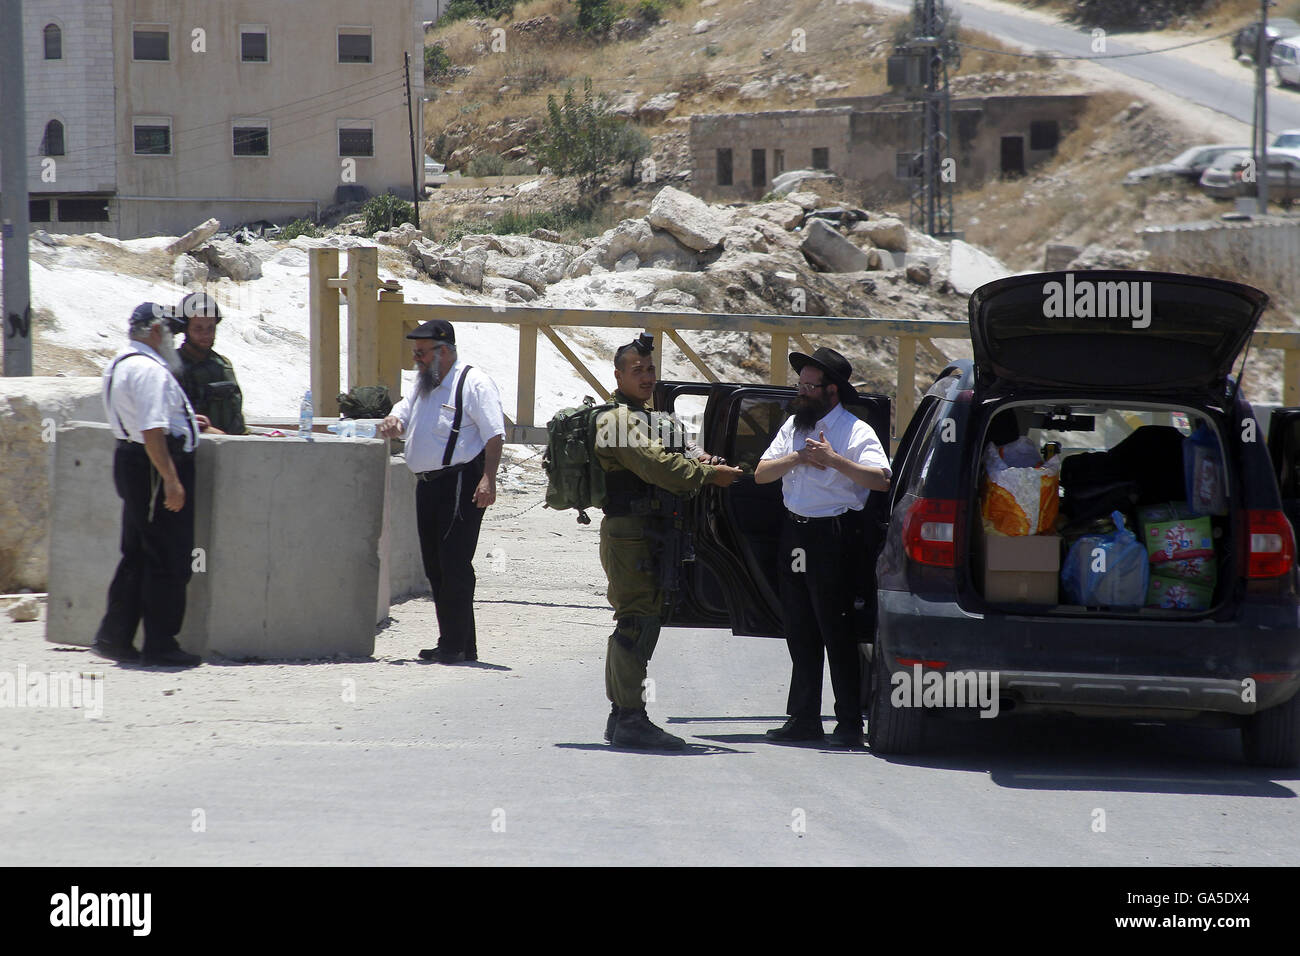 3 luglio 2016 - Hebron, West Bank, Territorio palestinese - soldati israeliani vicino una barriera bloccando la strada ad una entrata sud di Hebron il 3 luglio 2016, come l'esercito mantiene la città sotto lockdown dopo gli scontri e attentati che hanno ucciso due israeliani. Truppe israeliane bloccato Hebron e villaggi circostanti dopo due israeliani sono stati uccisi in attacchi di palestinesi nelle vicinanze.La repressione arriva nel mezzo di una svasatura-fino a nove mesi di violenza micidiale come la fine del musulmano il mese di digiuno del Ramadan telai, e dopo aver portato la chiave diplomatic convocati per passi urgenti da entrambi i lati per ravvivare i moribondi pe Foto Stock